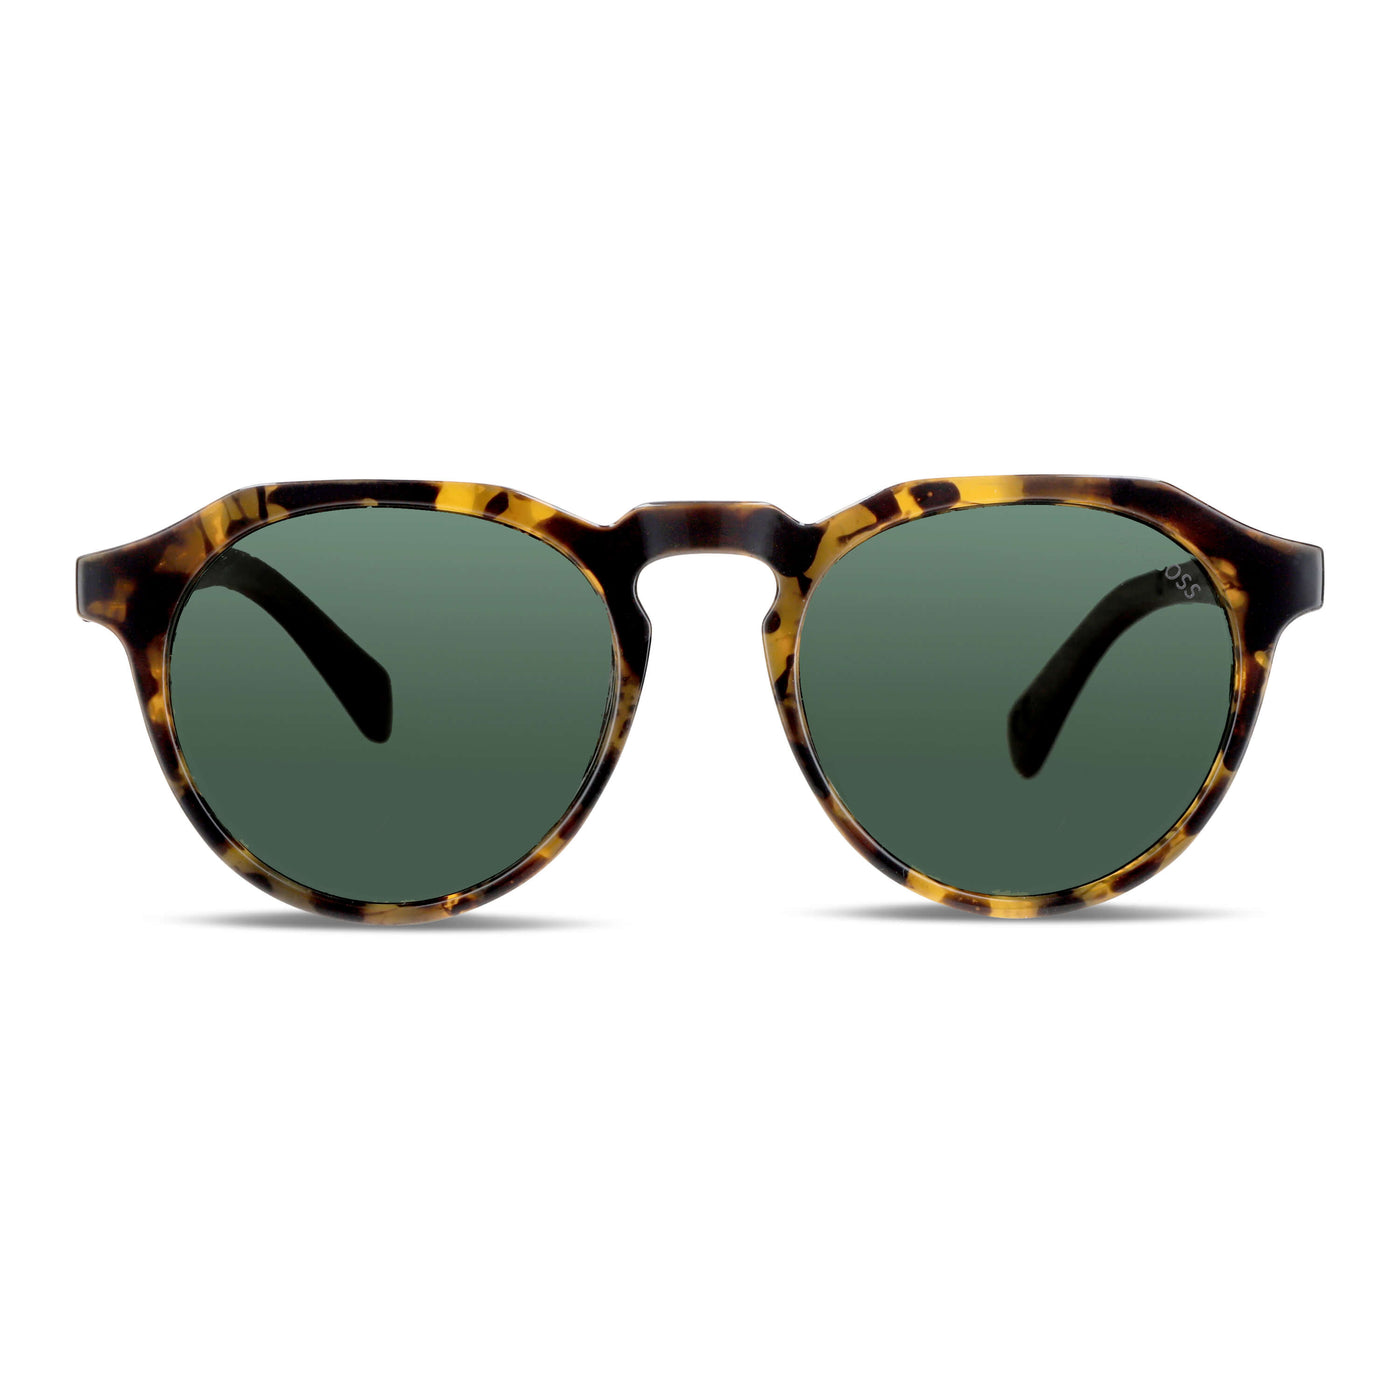 anteojos de sol hexagonales polarizados con patas de madera de hombre y mujer con lentes de color verde o G15